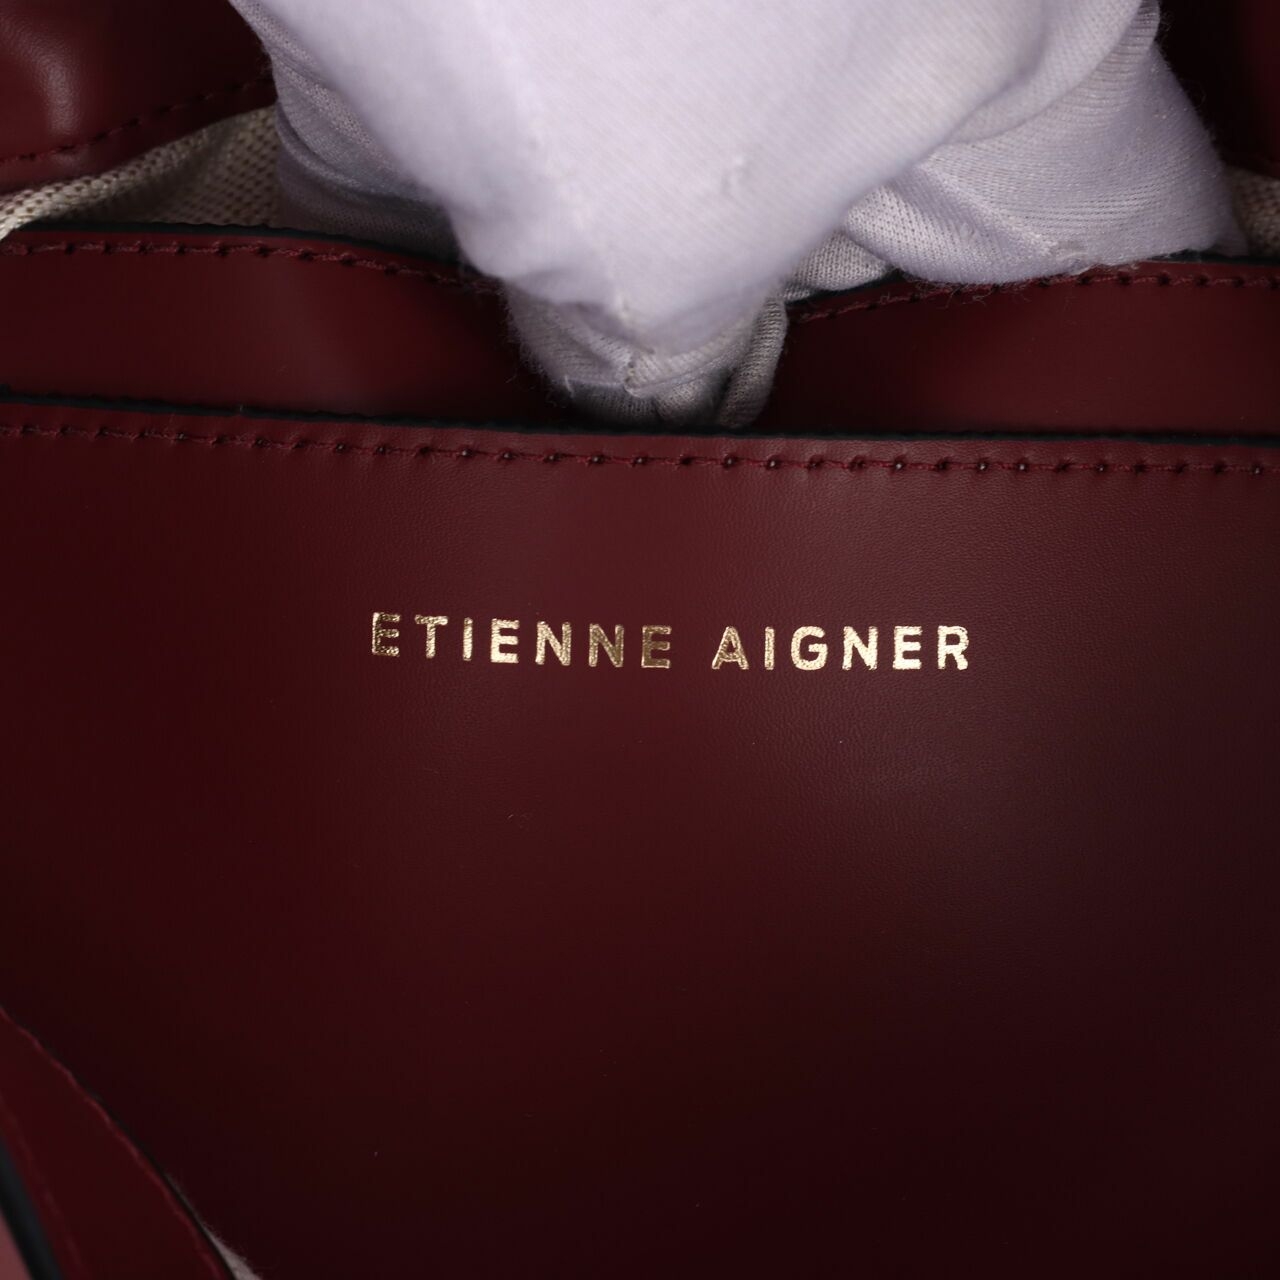 Etienne Aigner Mia Antic Crodovan Maroon Crossbody Bag 